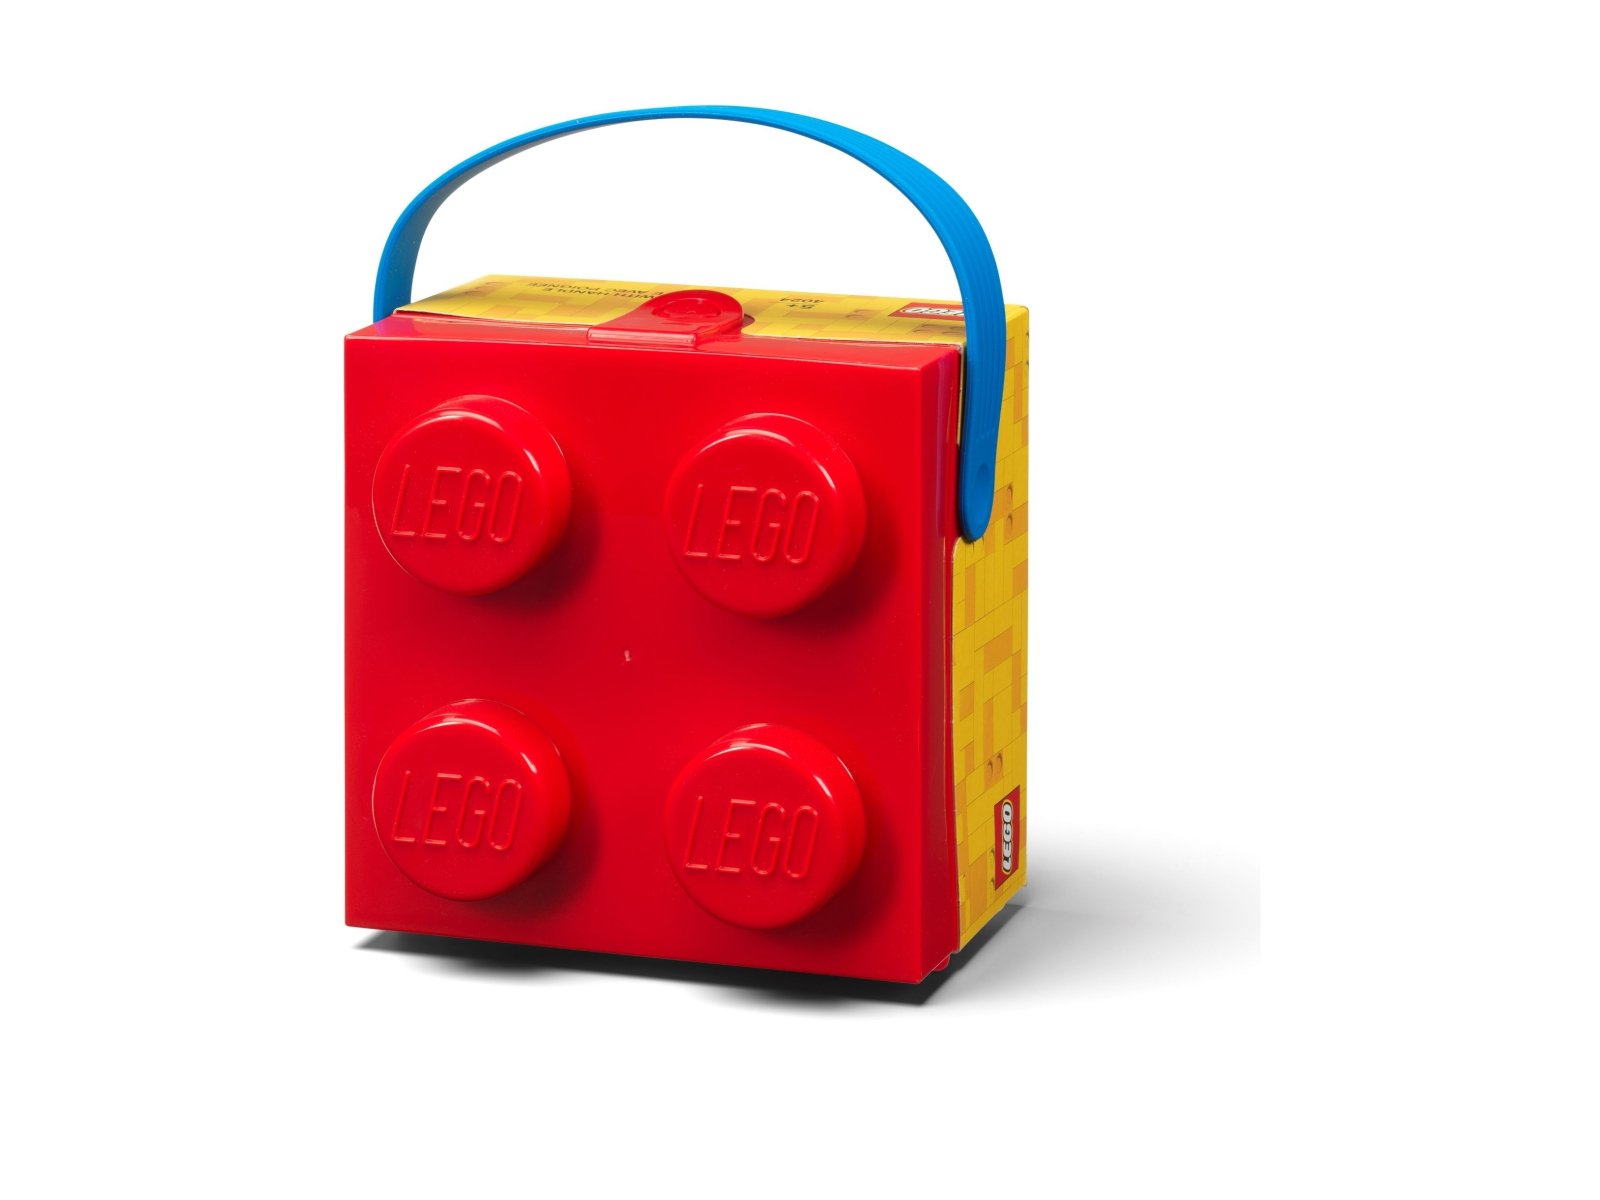 LEGO 5007269 Pudełko z uchwytem – czerwone